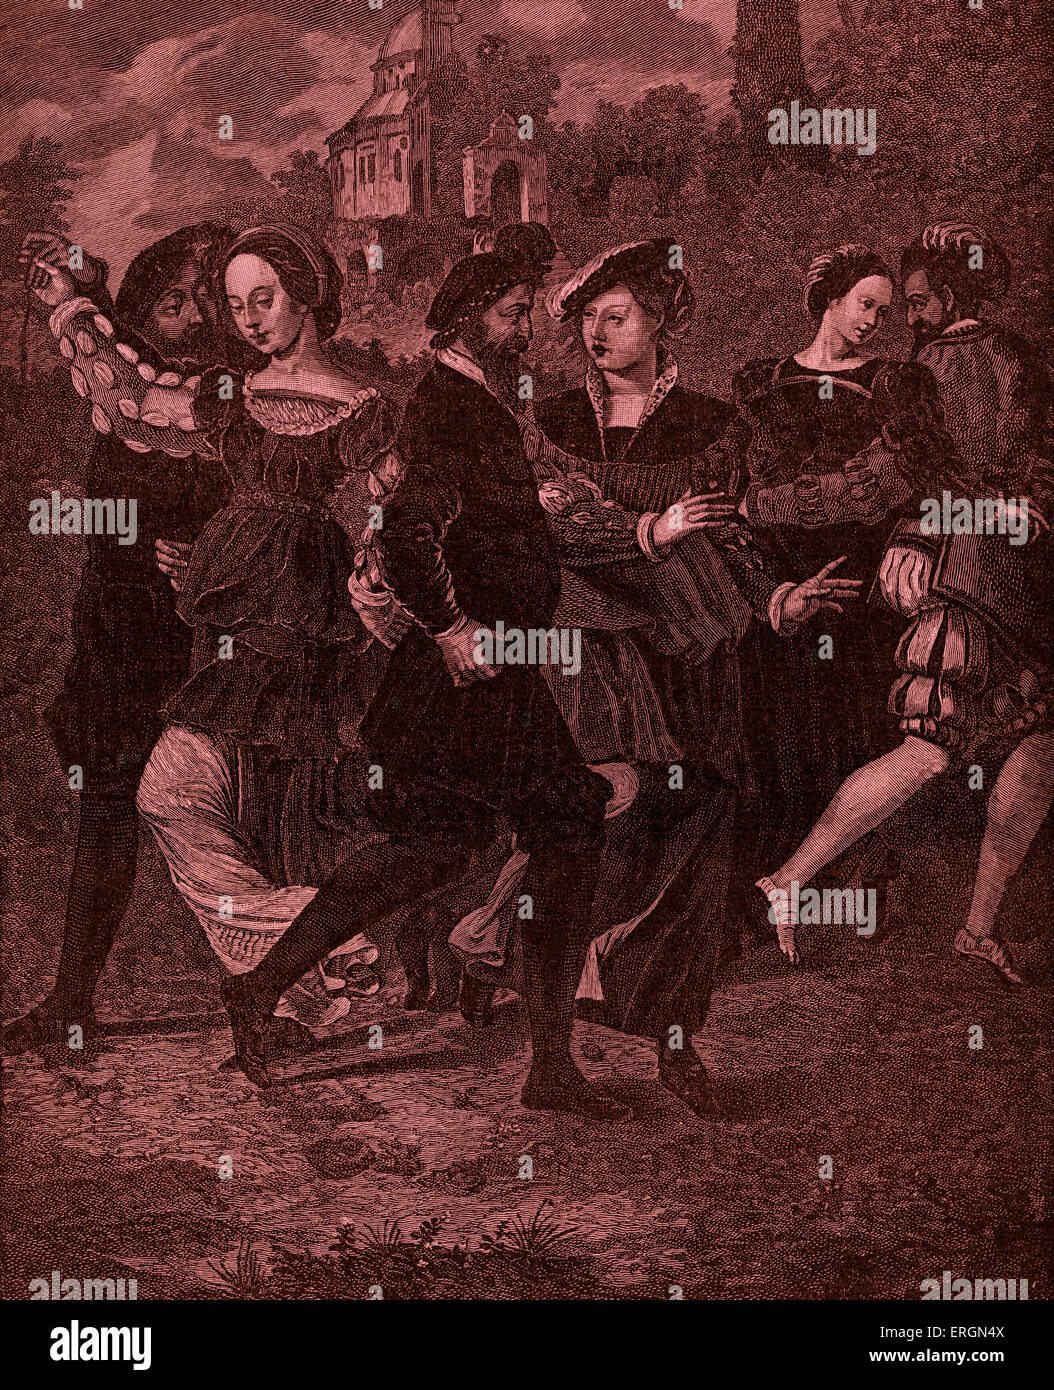 La Danza di immagine da parte di Hans Holbein (1497-1543). Ballerini sono, da sinistra a destra, il re Enrico VIII, Anne Boleyn, Thomas Howard, Foto Stock